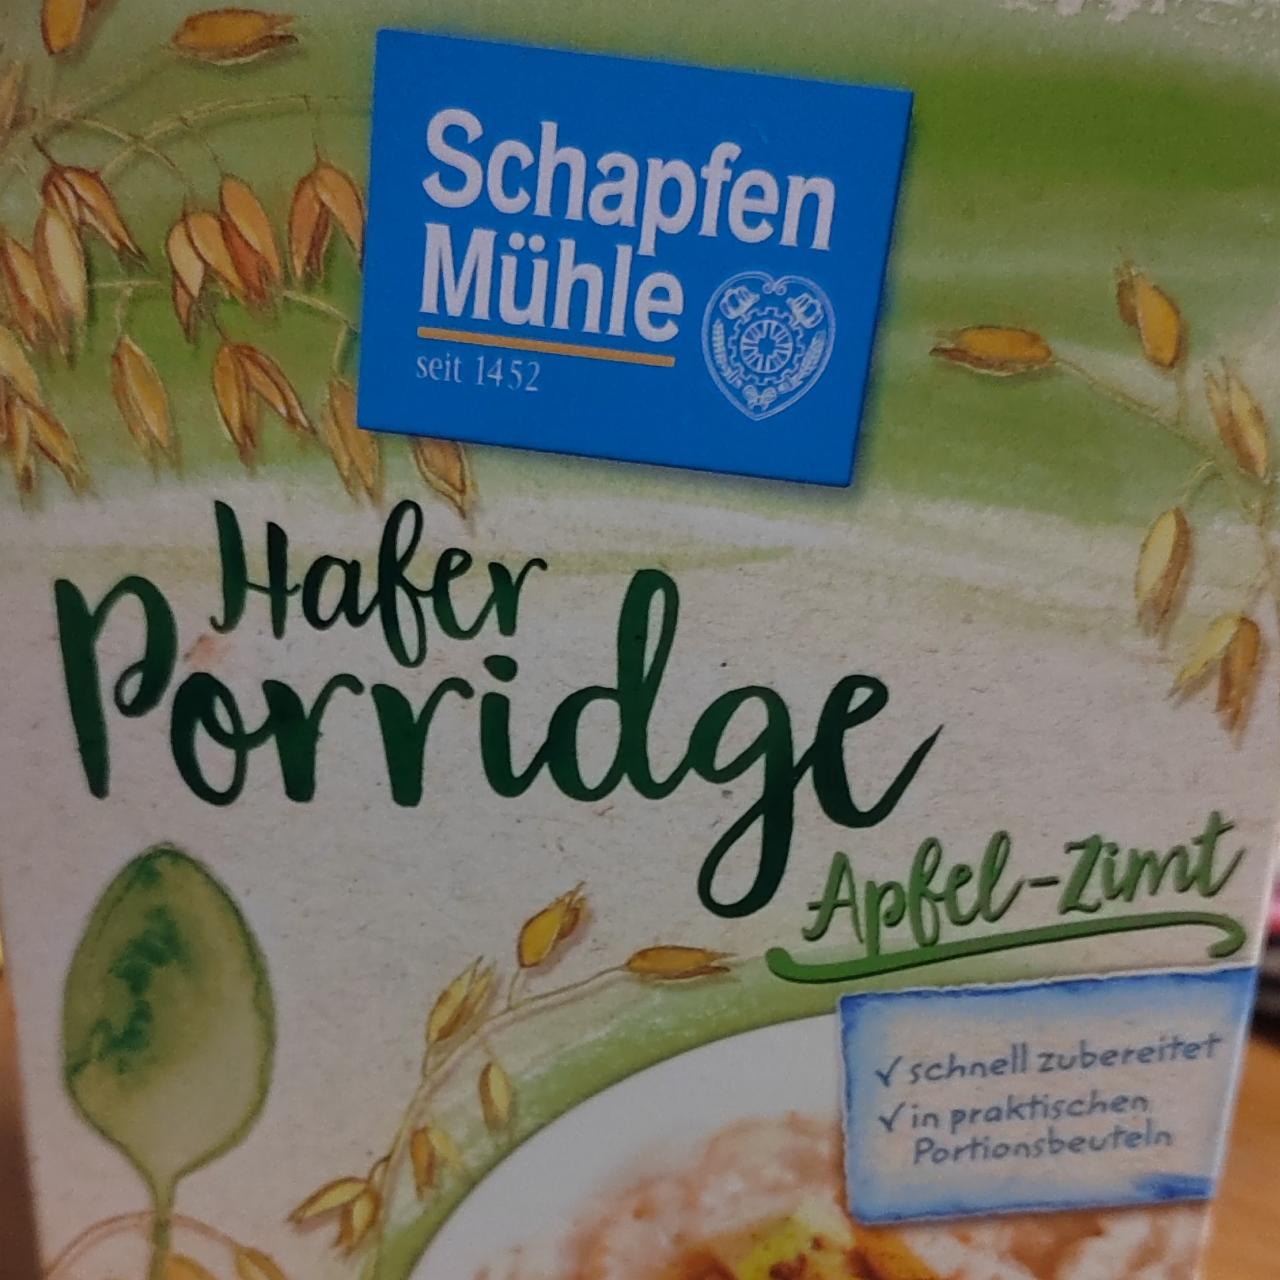 Fotografie - Hafer Porridge Apfel-Zimt Schapfen Mühle